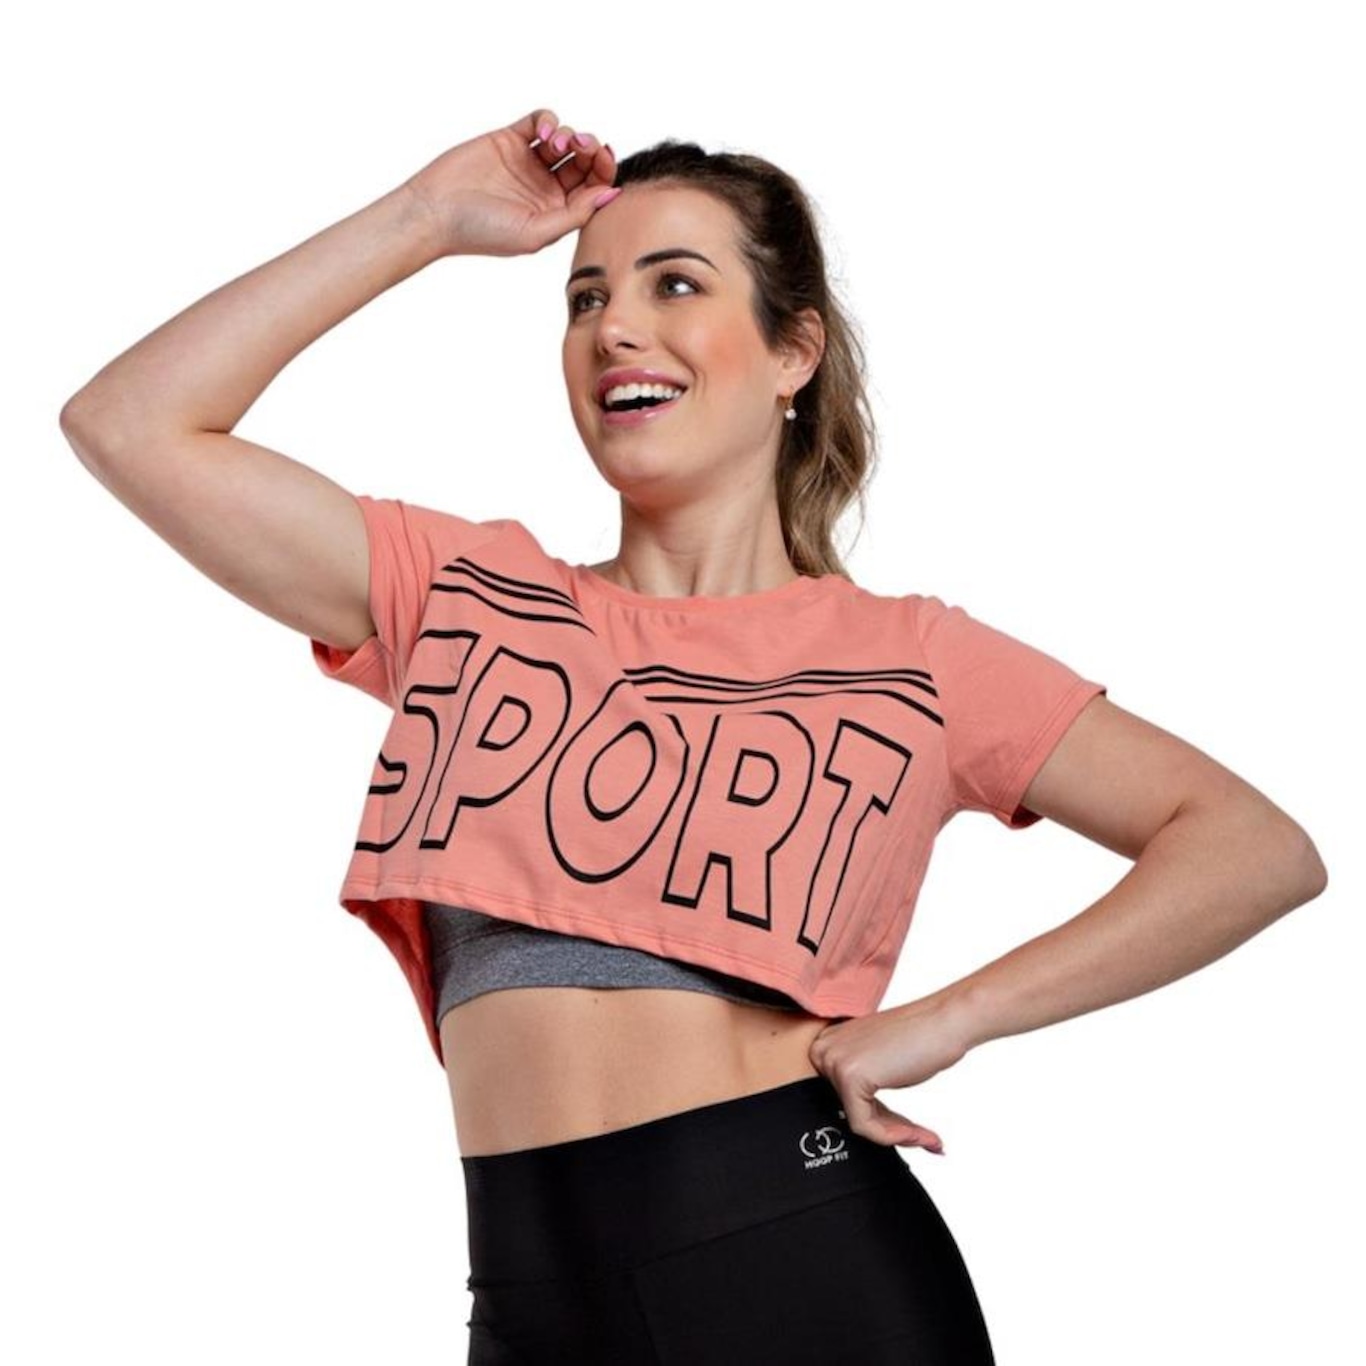 Blusa Cropped Fitness Básico Hoopfit Academia - Feminina em Promoção